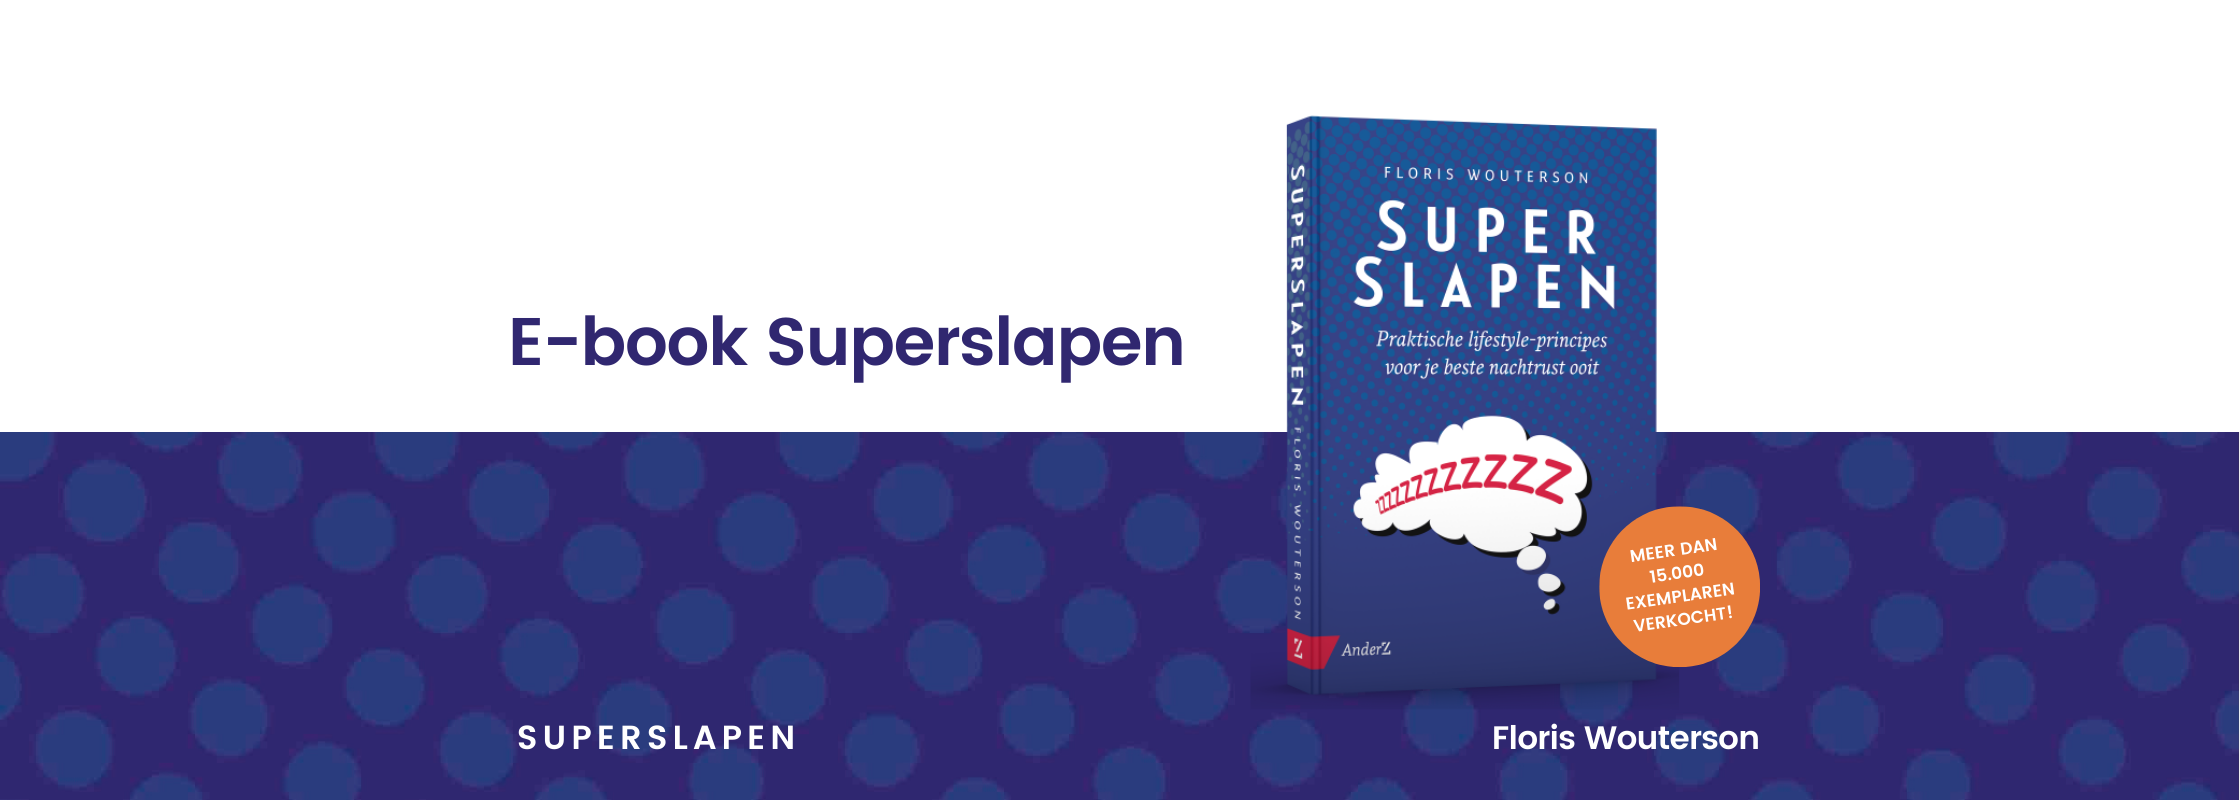 E-book Superslapen